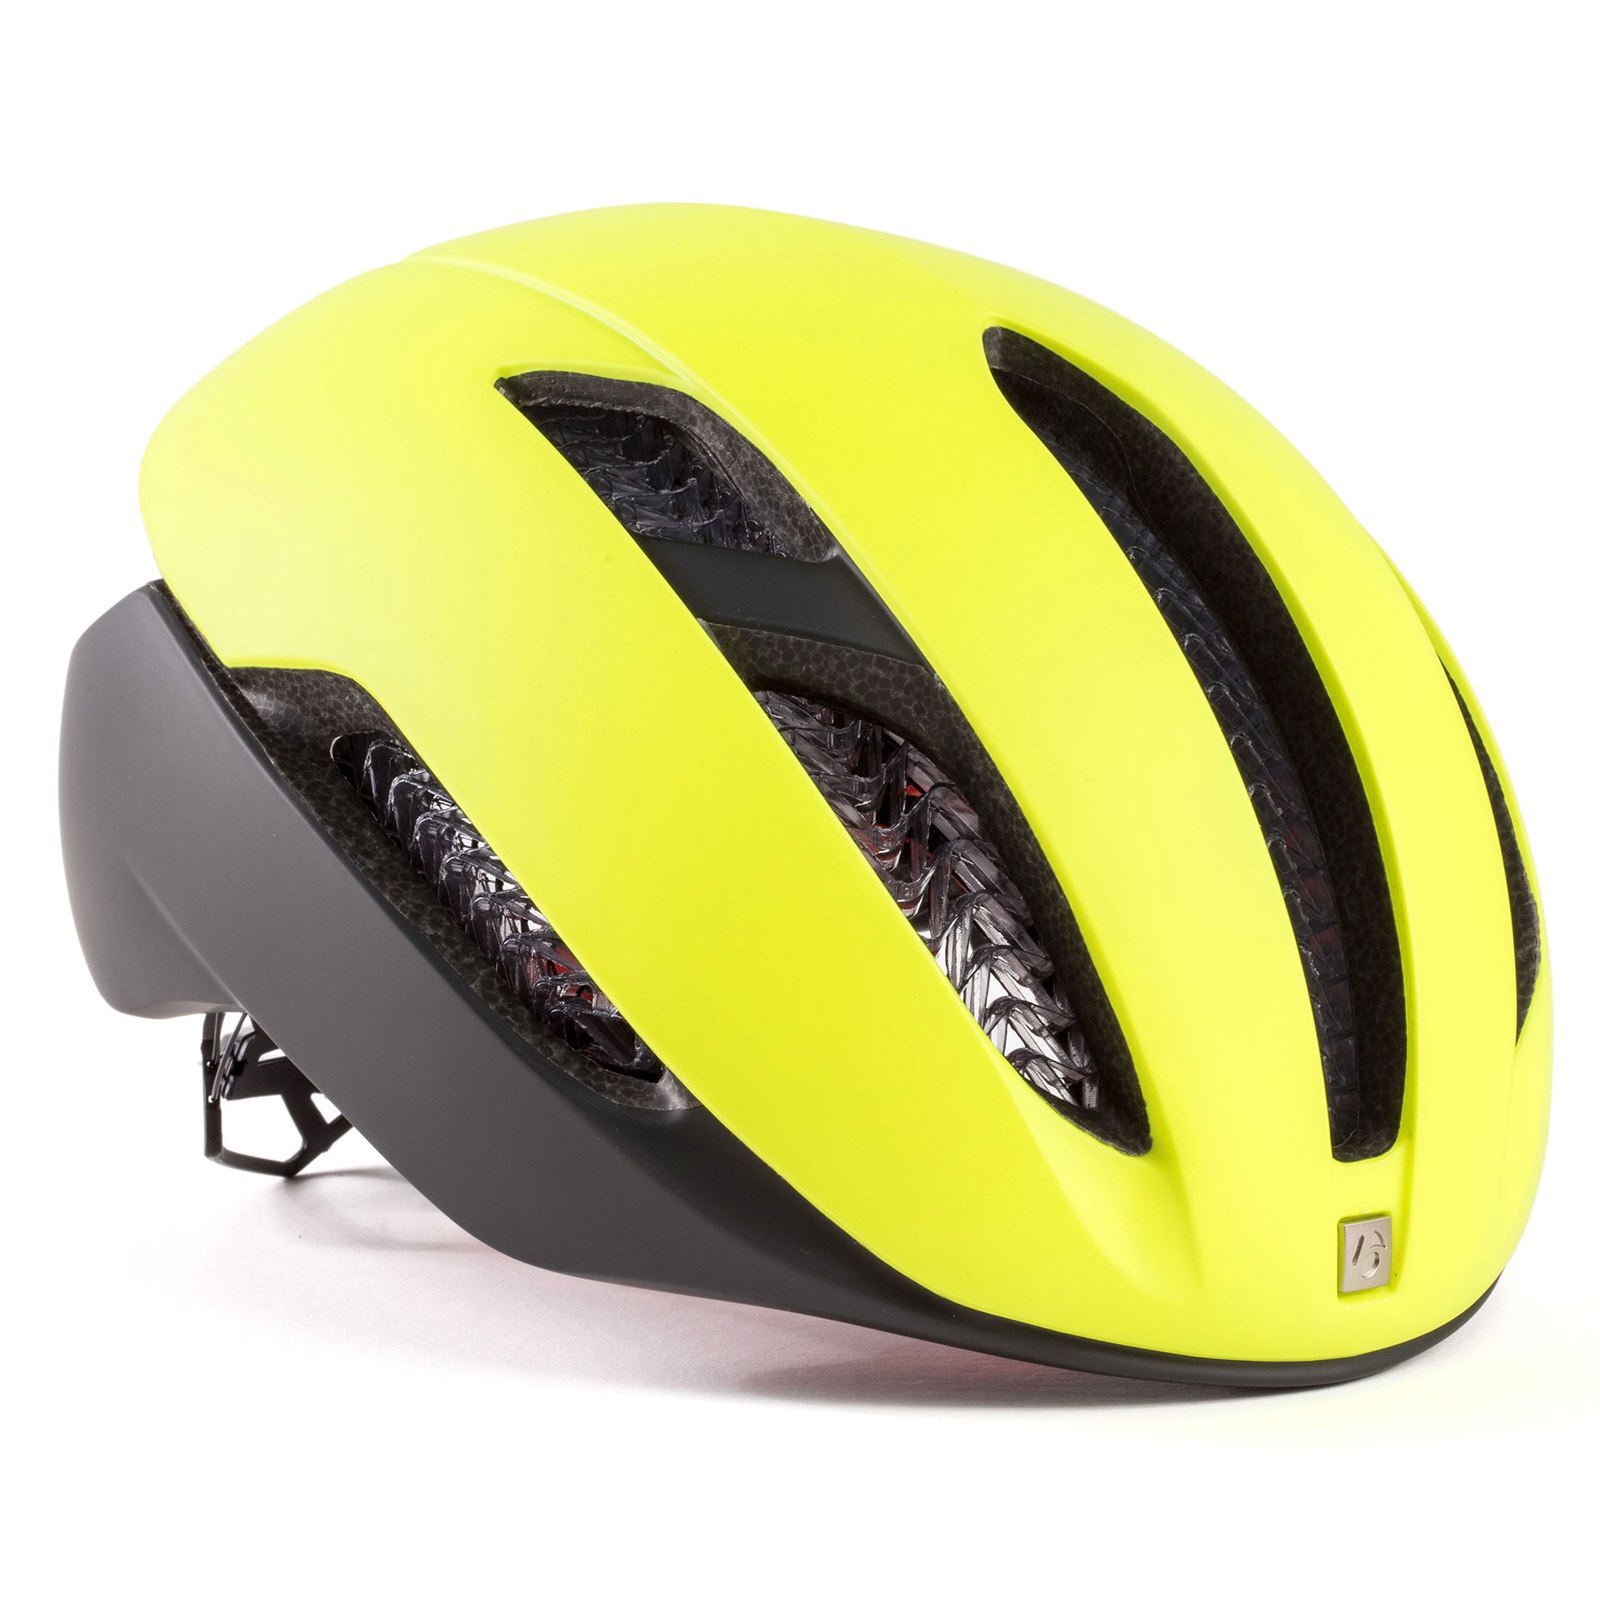 Productfoto van Bontrager XXX WaveCel Helmet - radioactive yellow/black